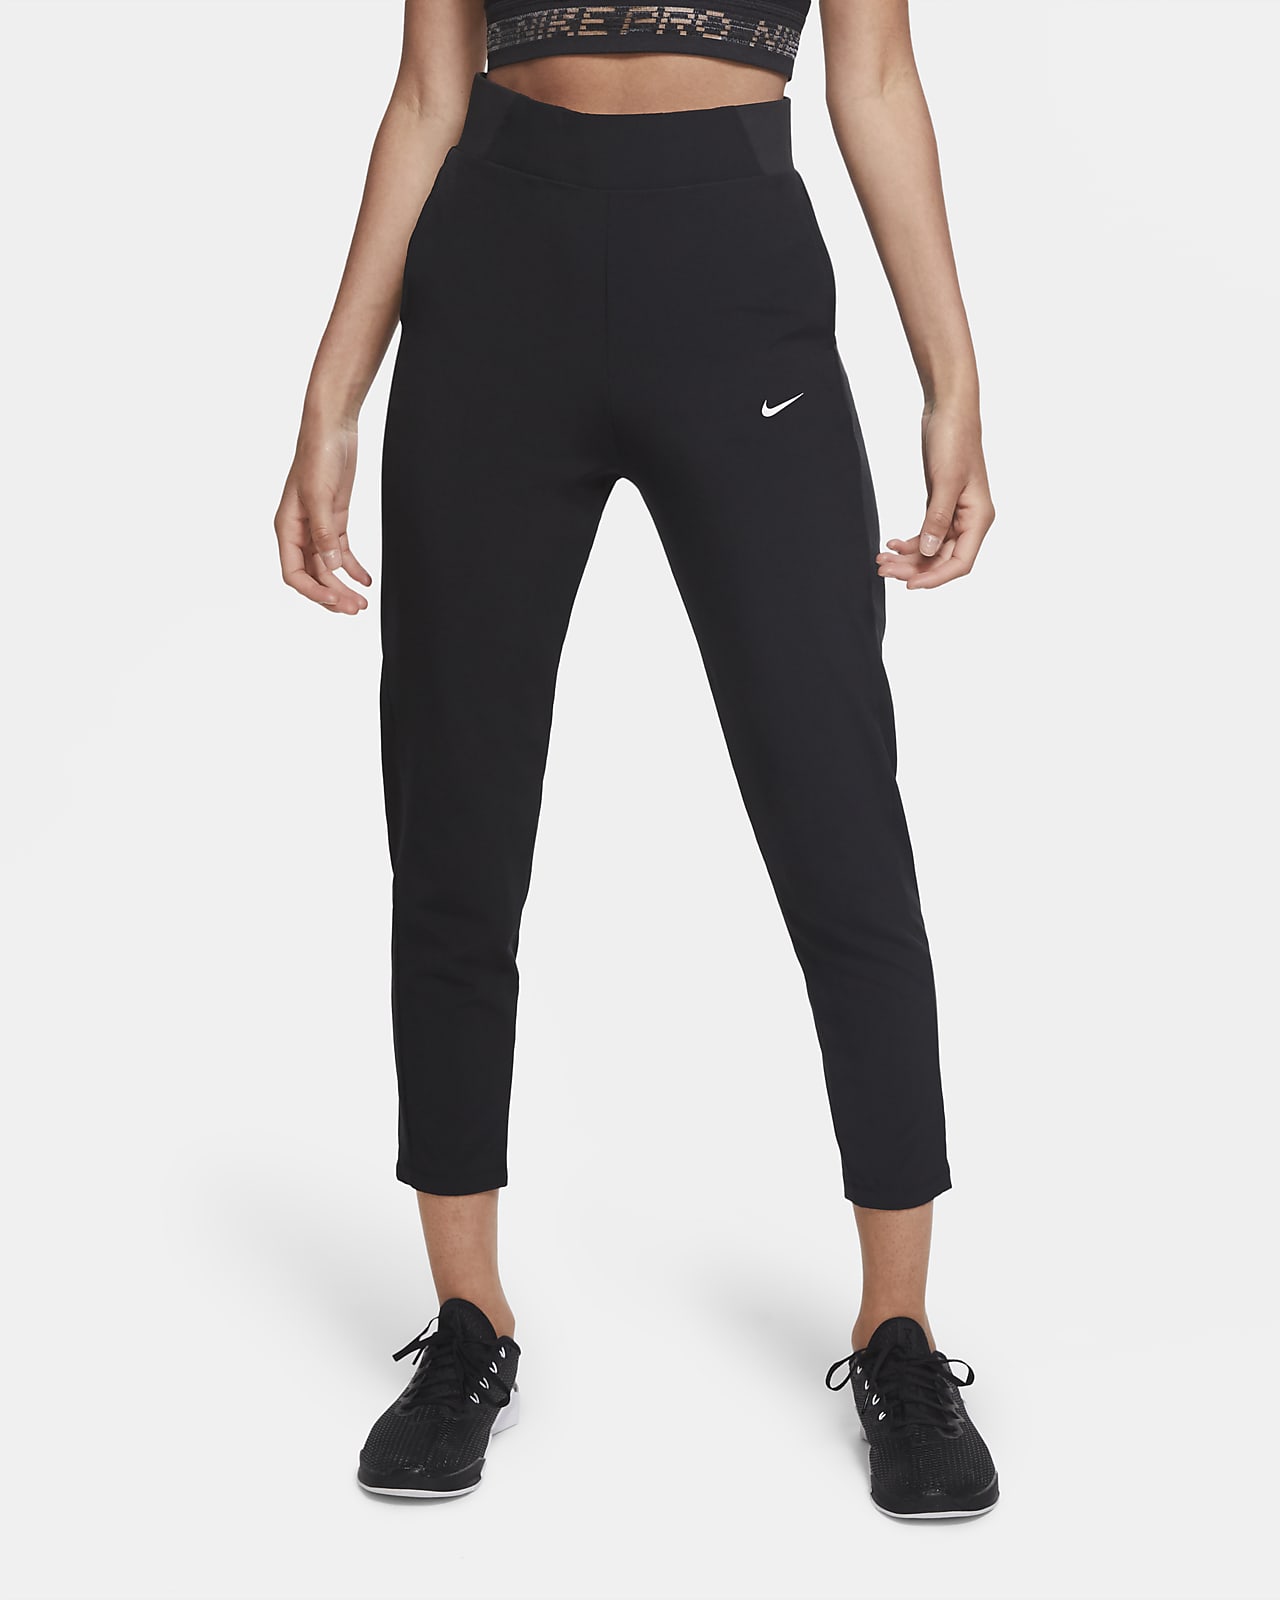 Nike Dri-FIT Bliss Training Pants. Nike.com